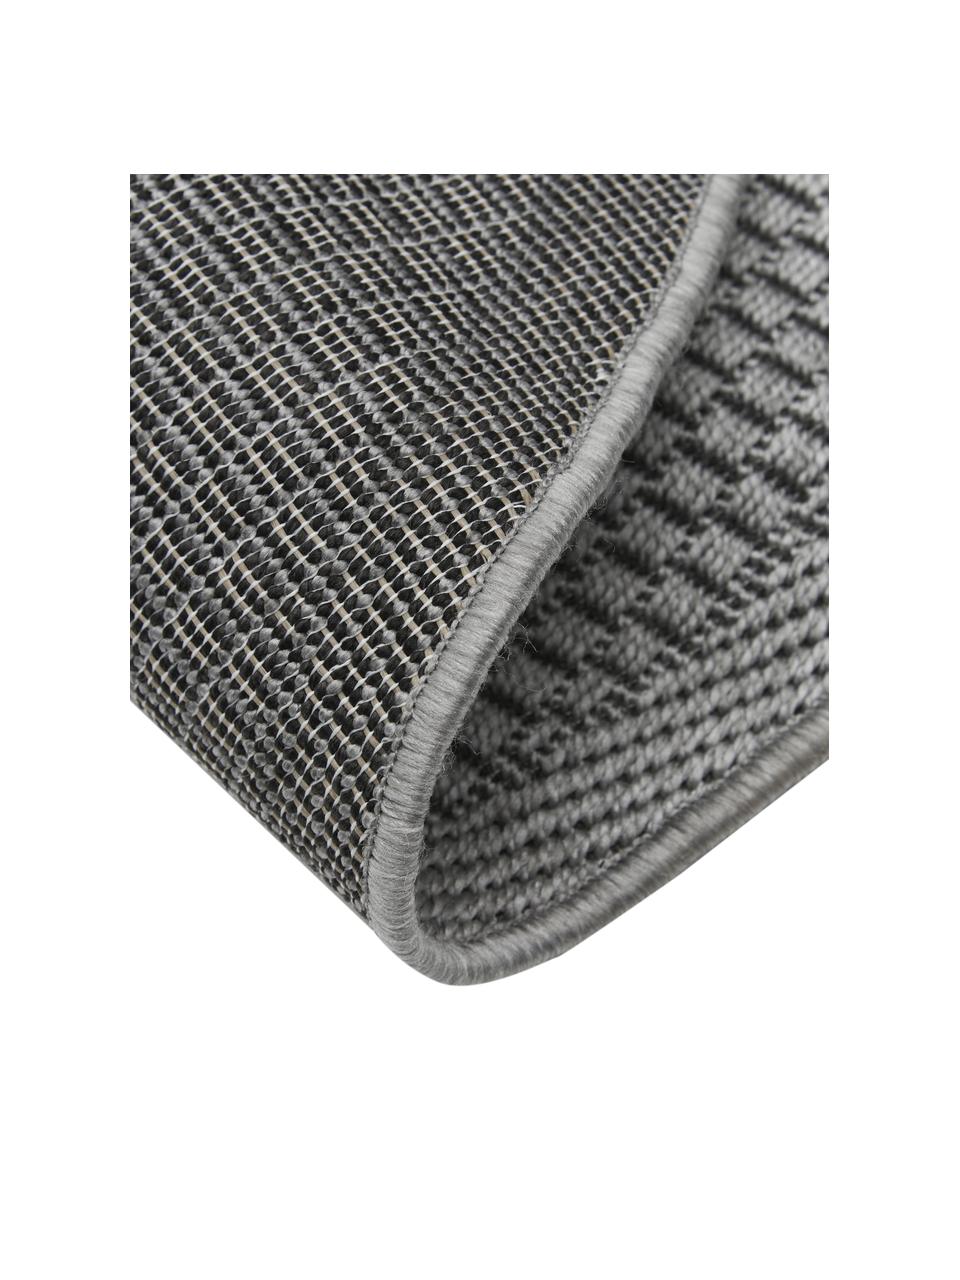 Tappeto ovale da interno-esterno color grigio Toronto, 100% polipropilene, Grigio, Larg. 160 x Lung. 230 cm, (taglia M)